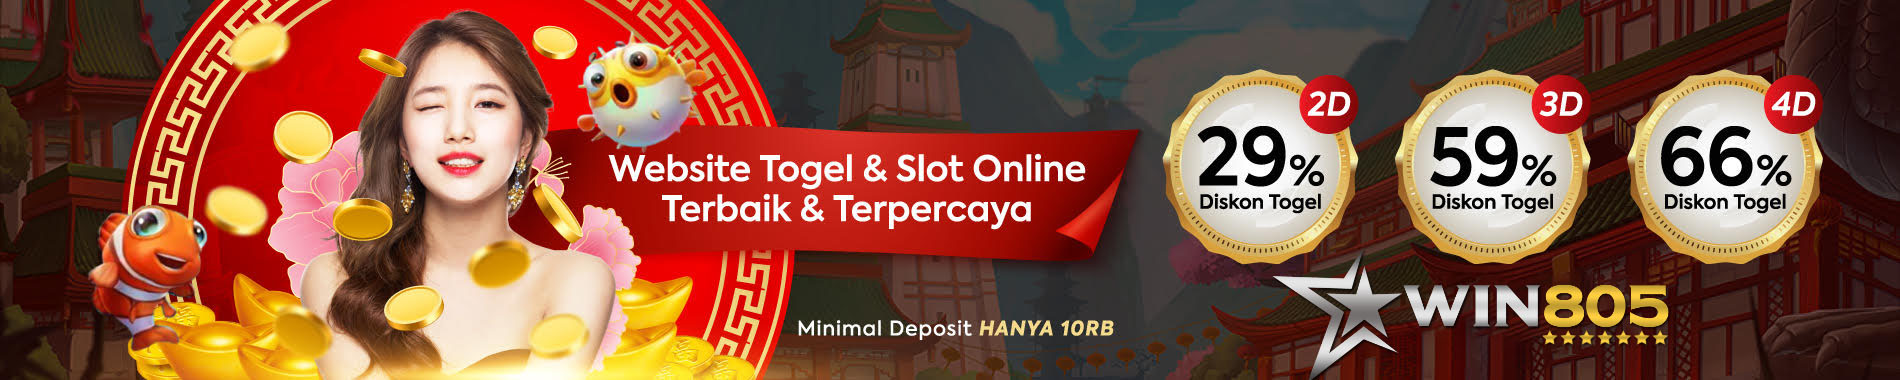 WIN805 - Website Togel dan Slot Online Terbaik